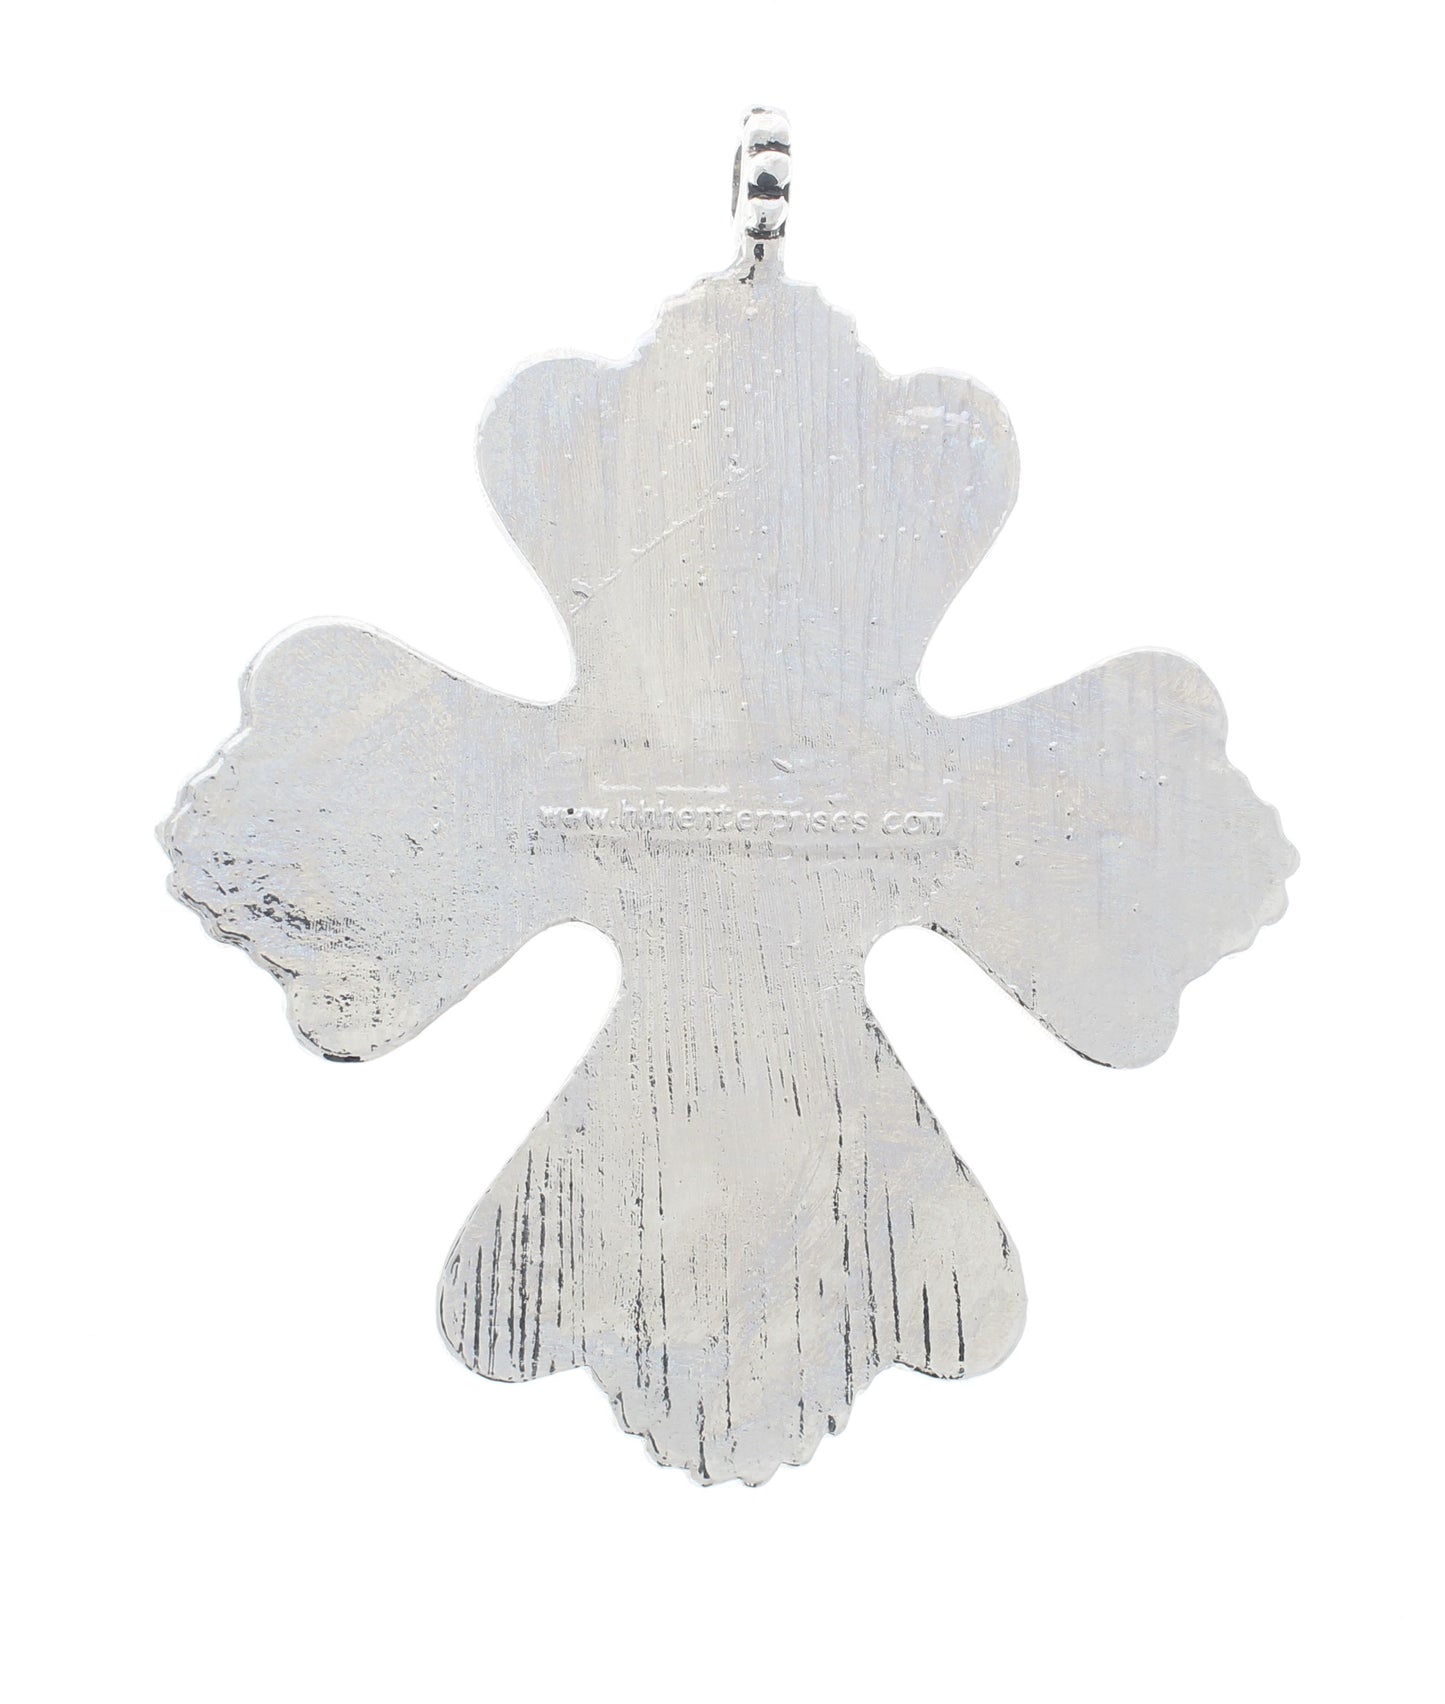 Bezel Pendant cross 4" x 3.5in Silver Flourished Cross, Designer Pendant(Bezel) ea